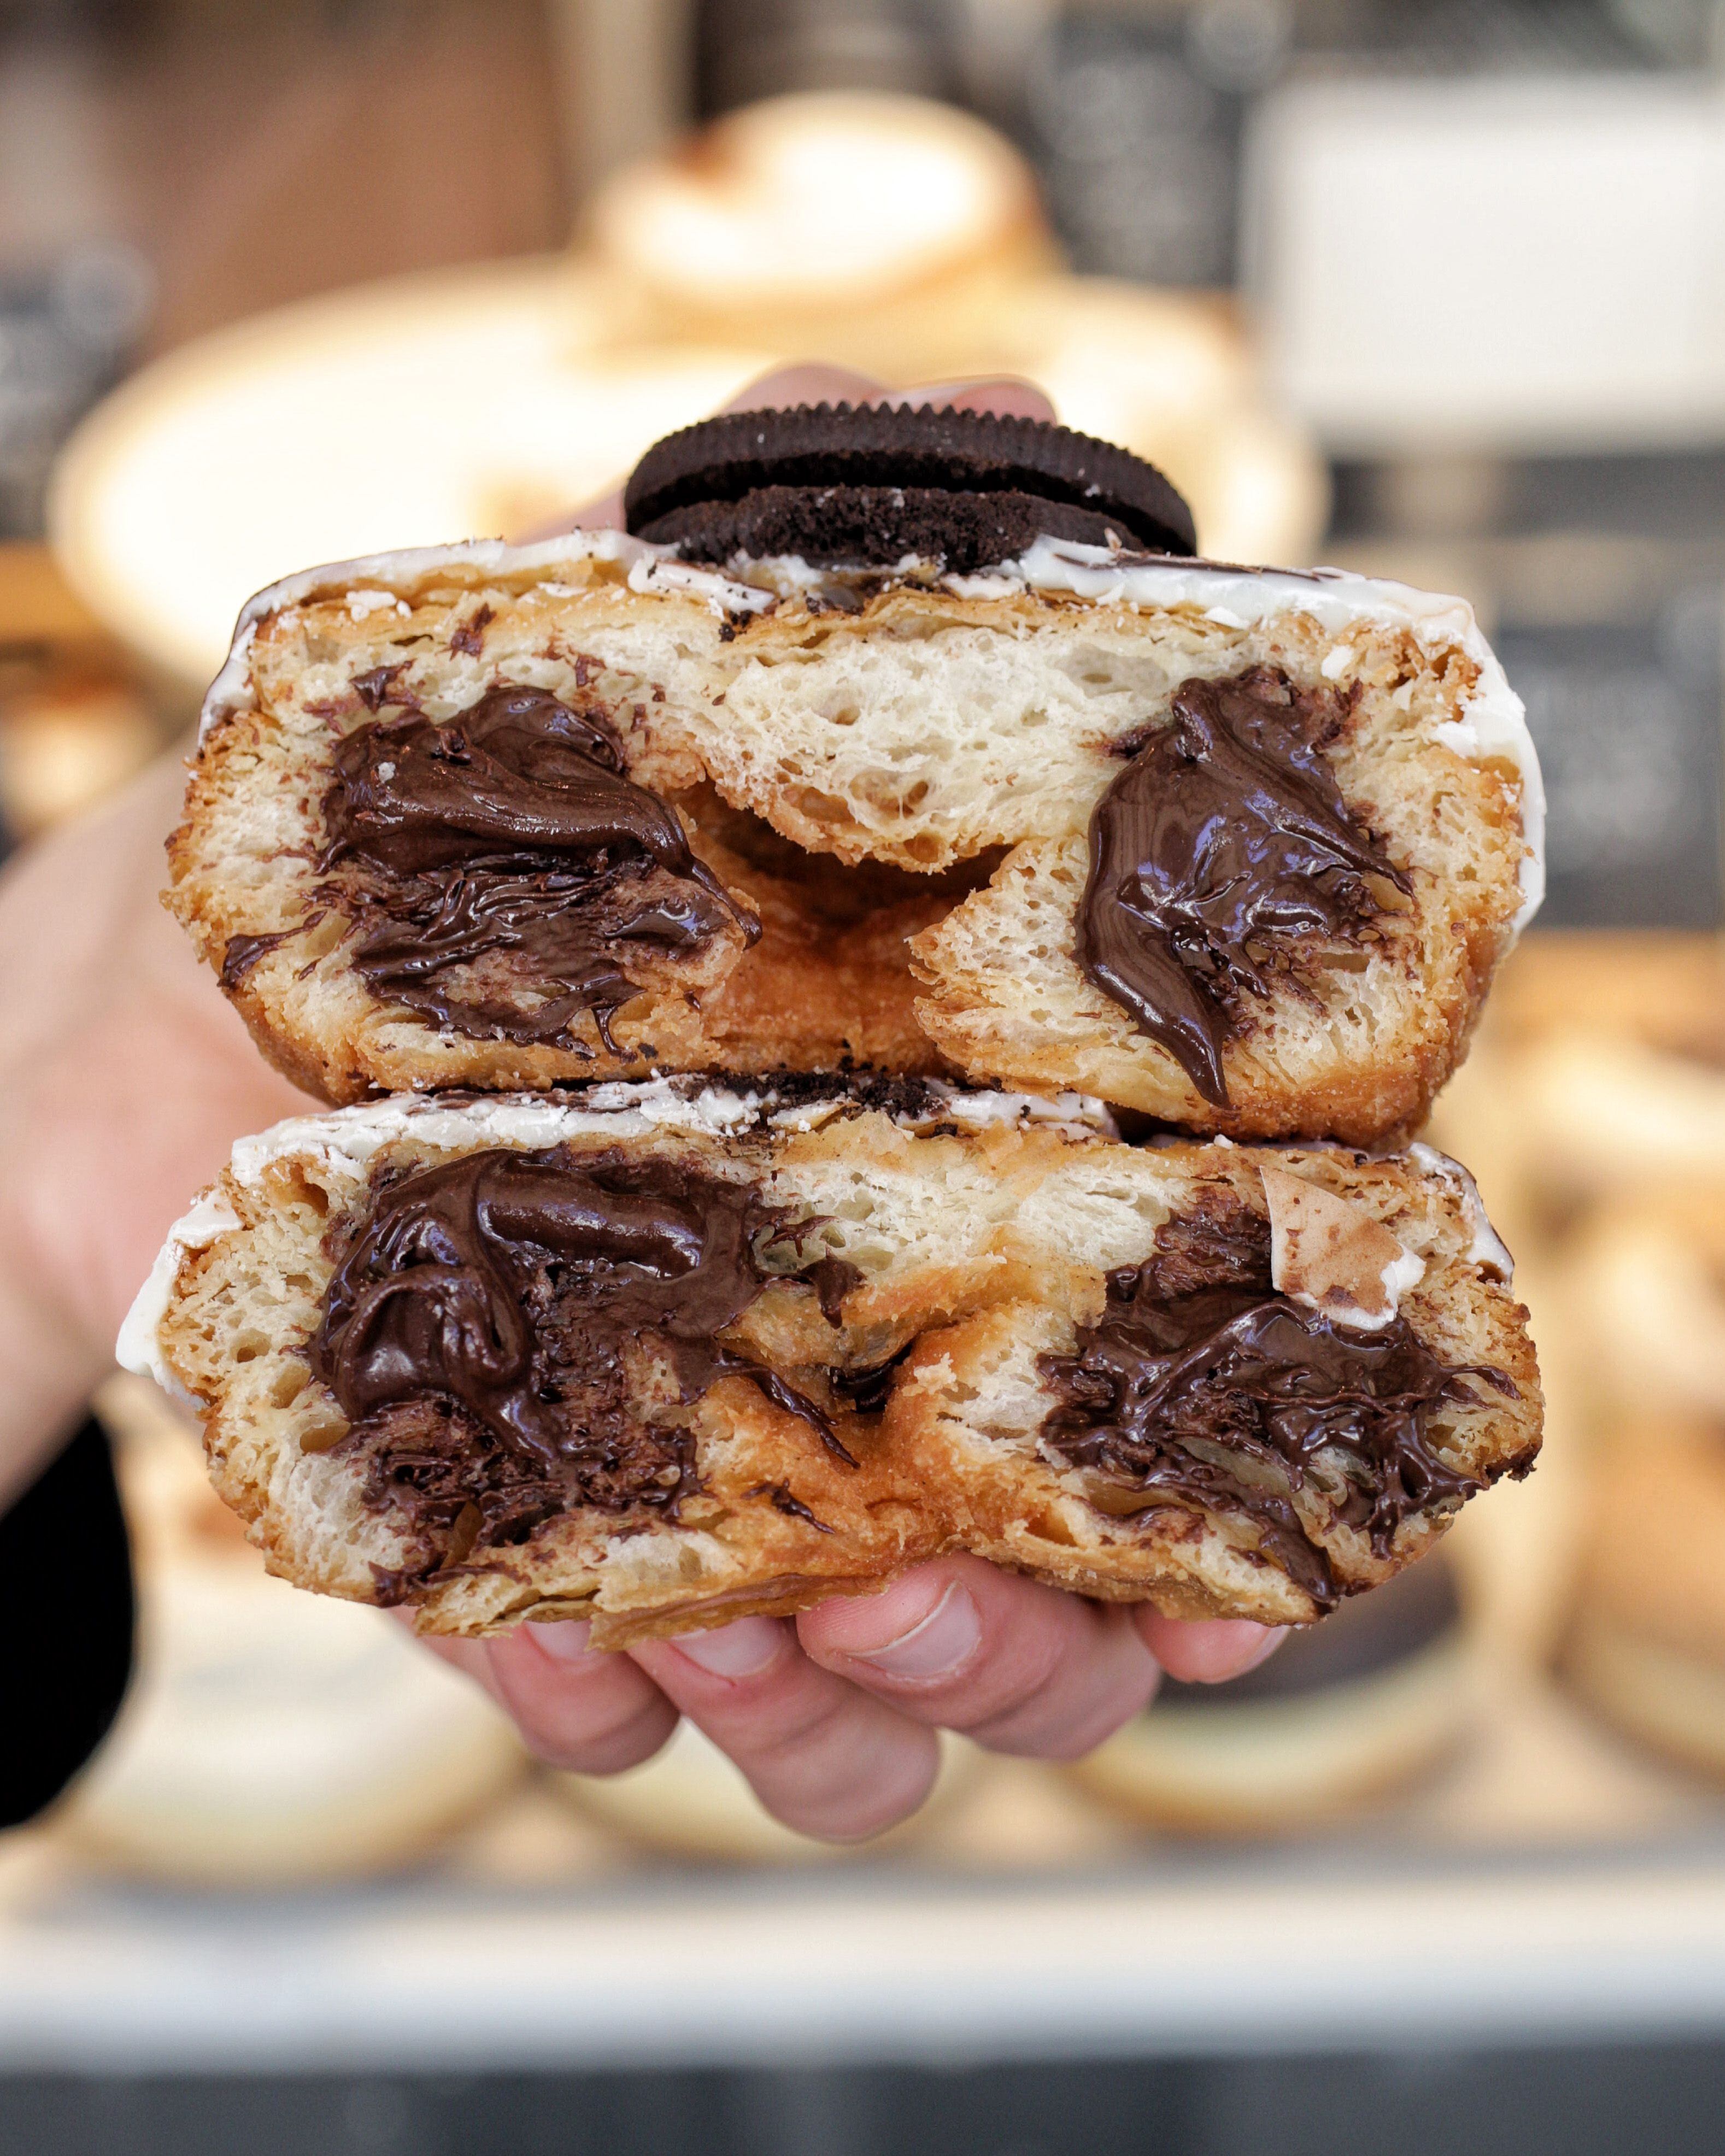 Un 'cronut', mitad croissant mitad donut, relleno de crema de chocolate.